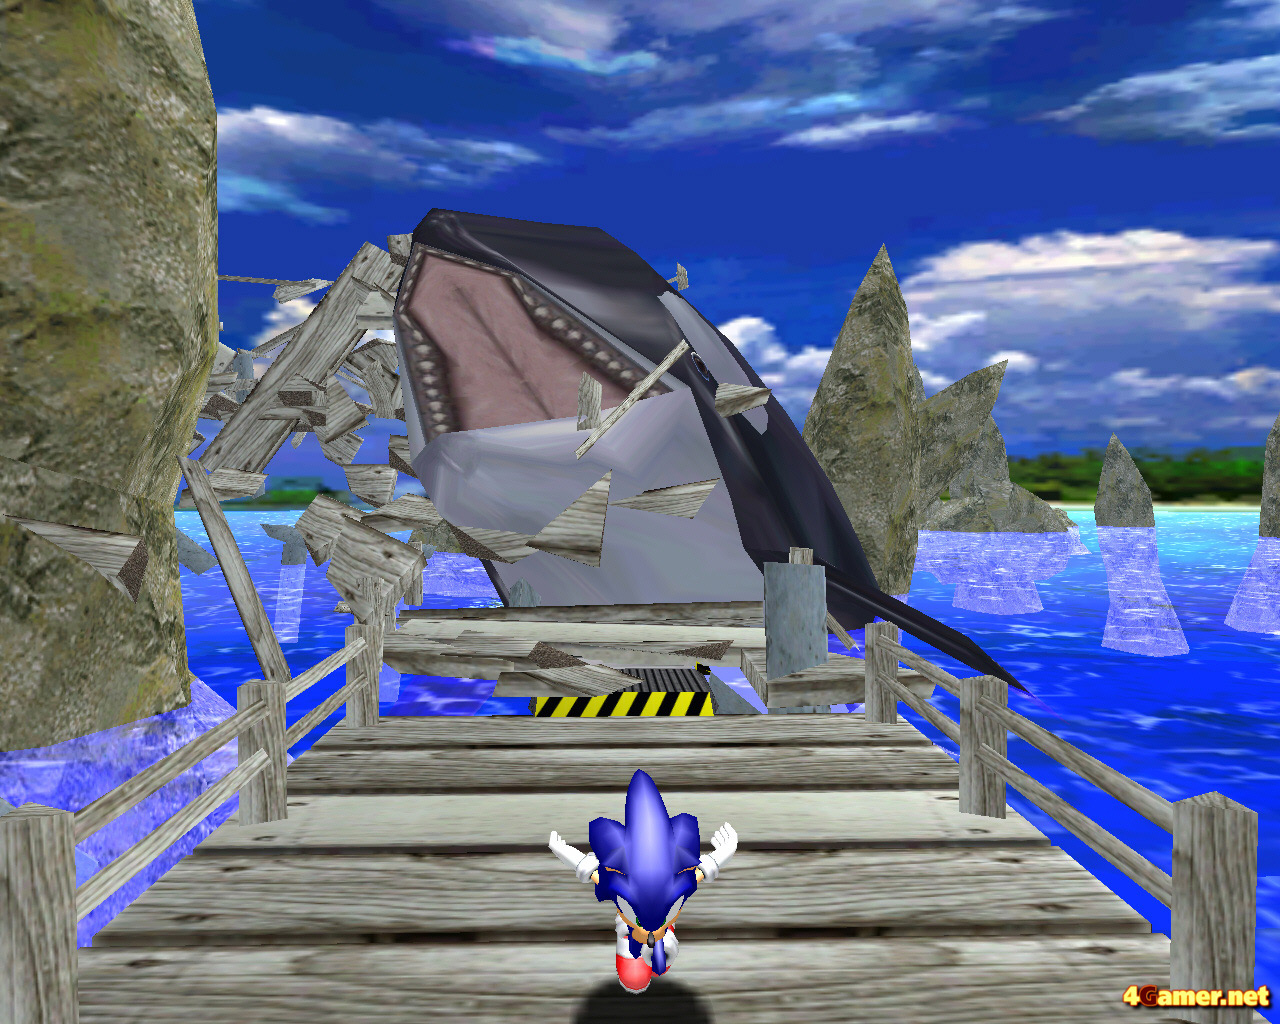 حصريا هنا فقط اللعبة الجديدة Sonic DX الروابط مؤقتة 180 ميجا الحق بسرعة Sonicdx05